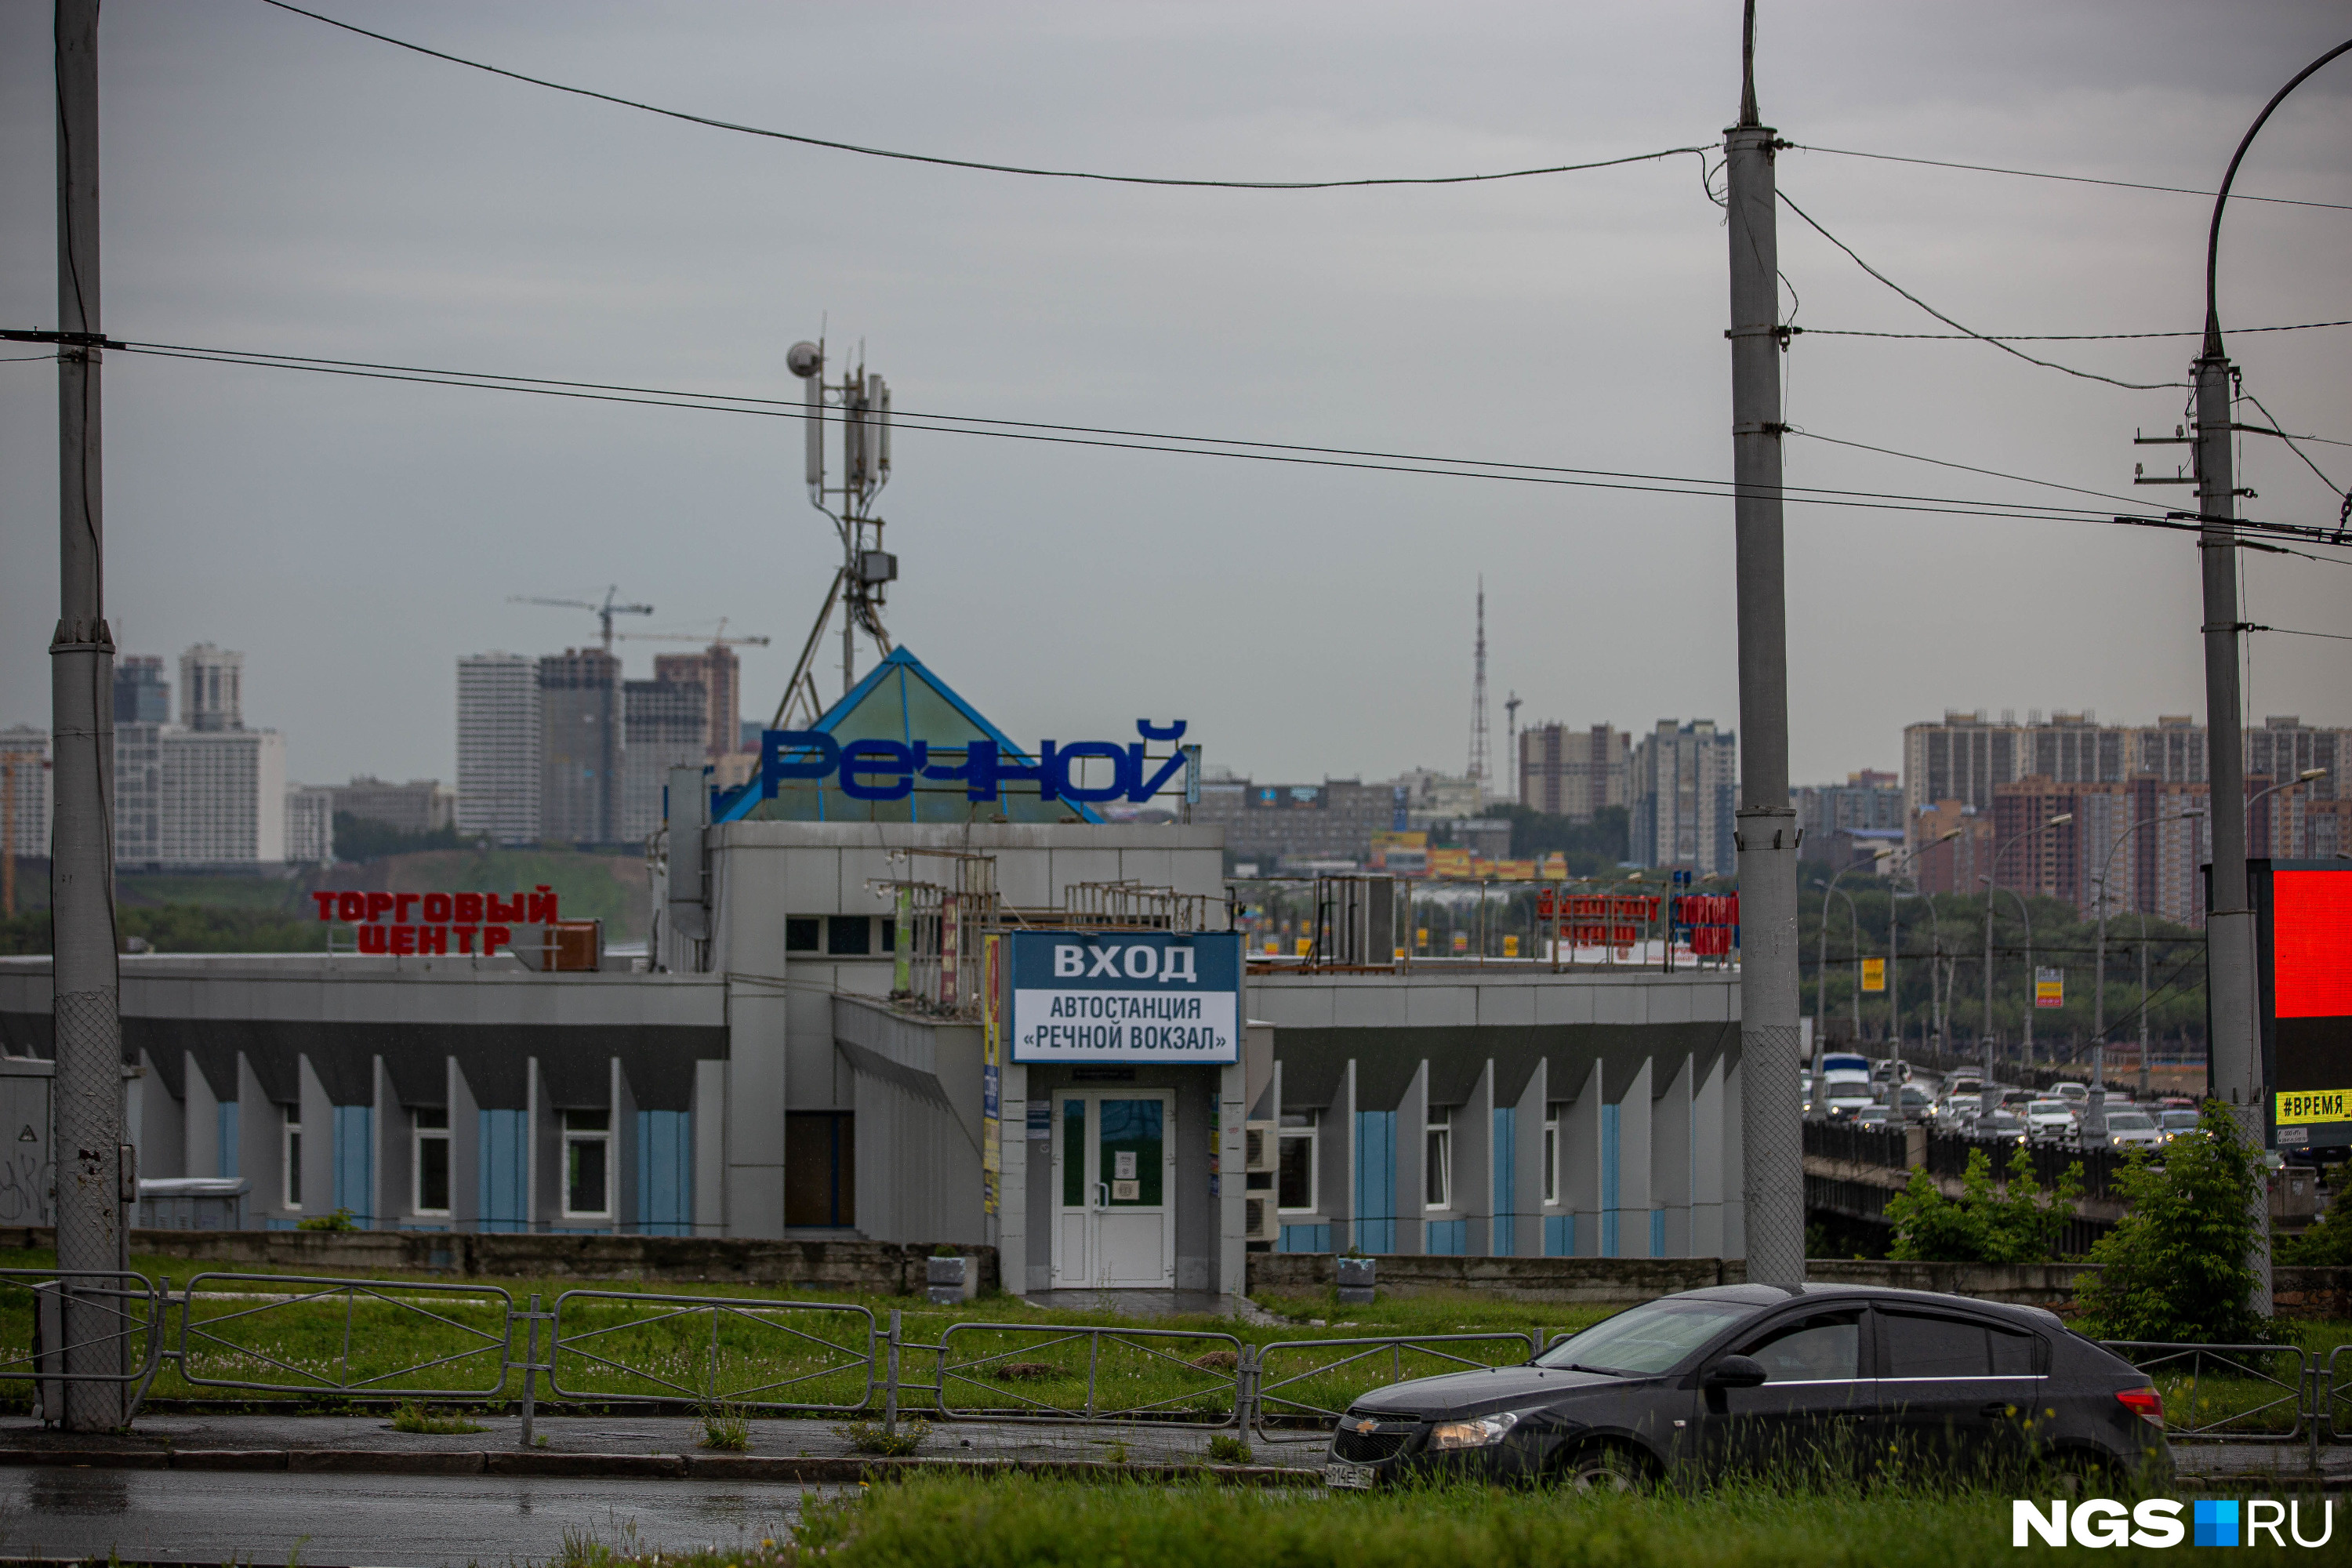 Он выходит на ближайшей станции. Речной вокзал Новосибирск автовокзал. Автобусная станция Речной вокзал Новосибирск. Метро Речной вокзал Новосибирск. Новосибирск автостанции на вокзале.